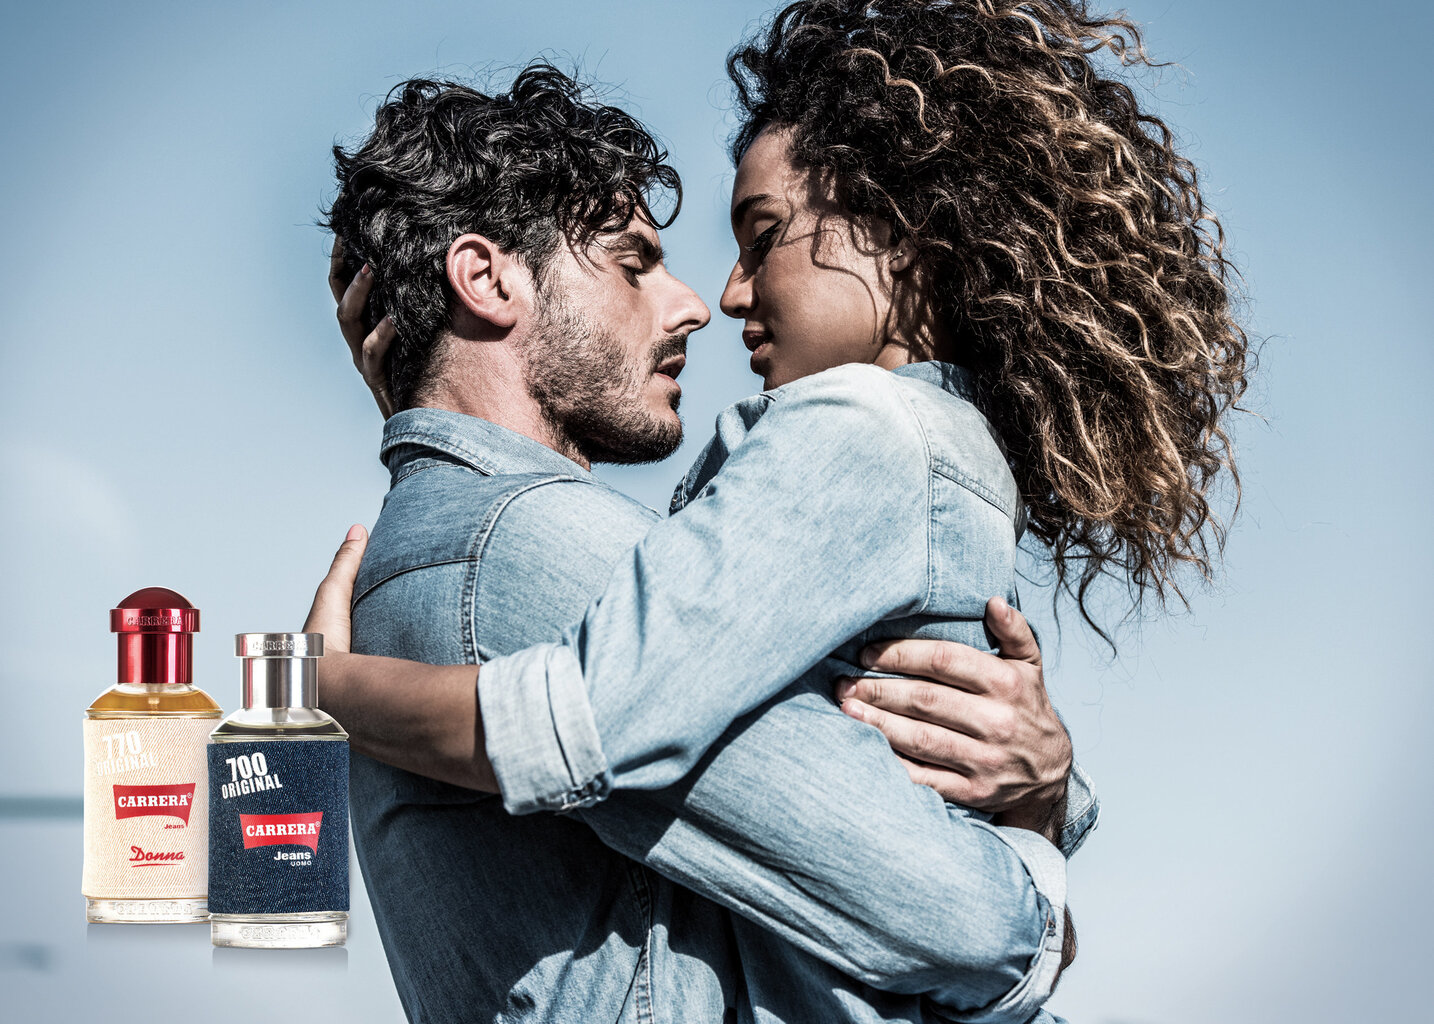 Meeste parfümeeria Carrera EDT Jeans 700 Original Uomo (125 ml) hind ja info | Meeste parfüümid | kaup24.ee